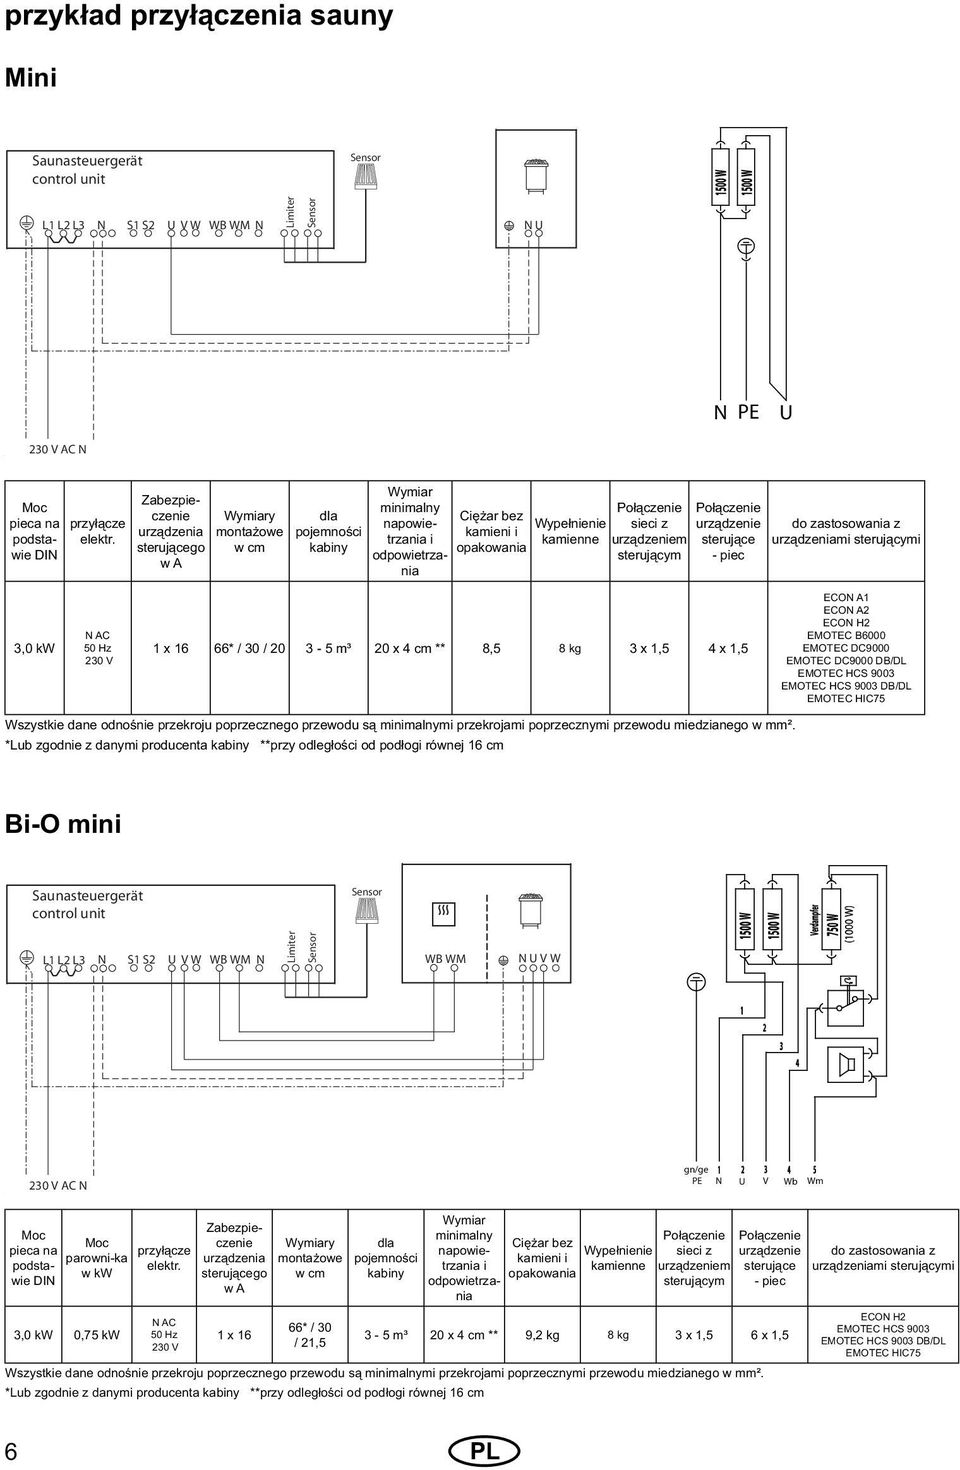 Połączenie sieci z urządzeniem sterującym Połączenie urządzenie sterujące - piec do zastosowania z urządzeniami sterującymi 3,0 kw N AC 50 Hz 230 V 1 x 16 66* / 30 / 20 3-5 m³ 20 x 4 cm ** 8,5 8 kg 3